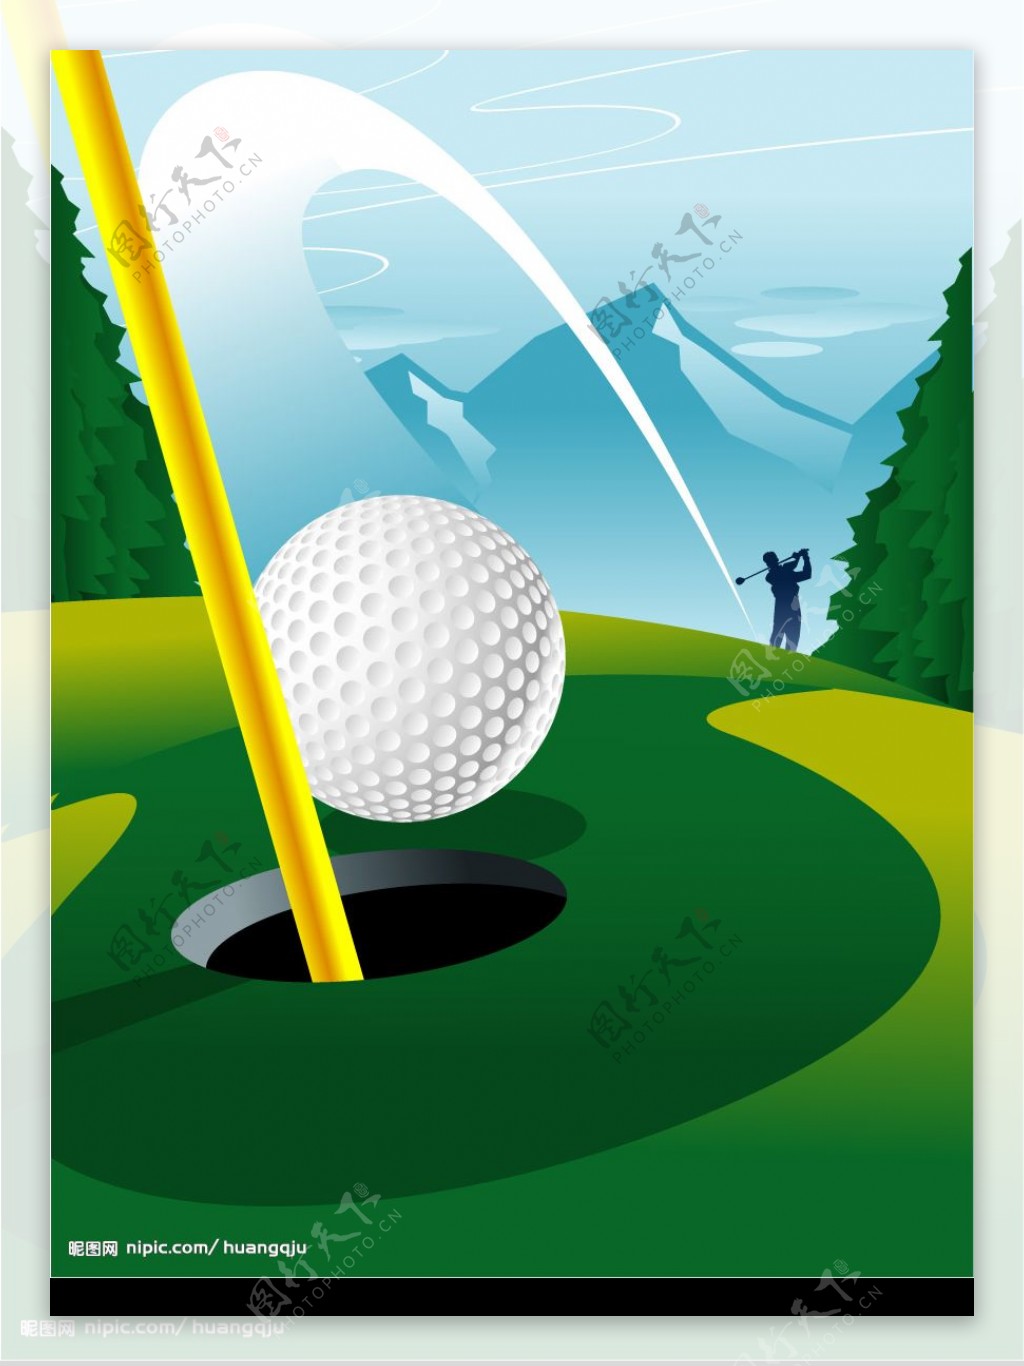 高尔夫球场一杆入洞矢量素材图片